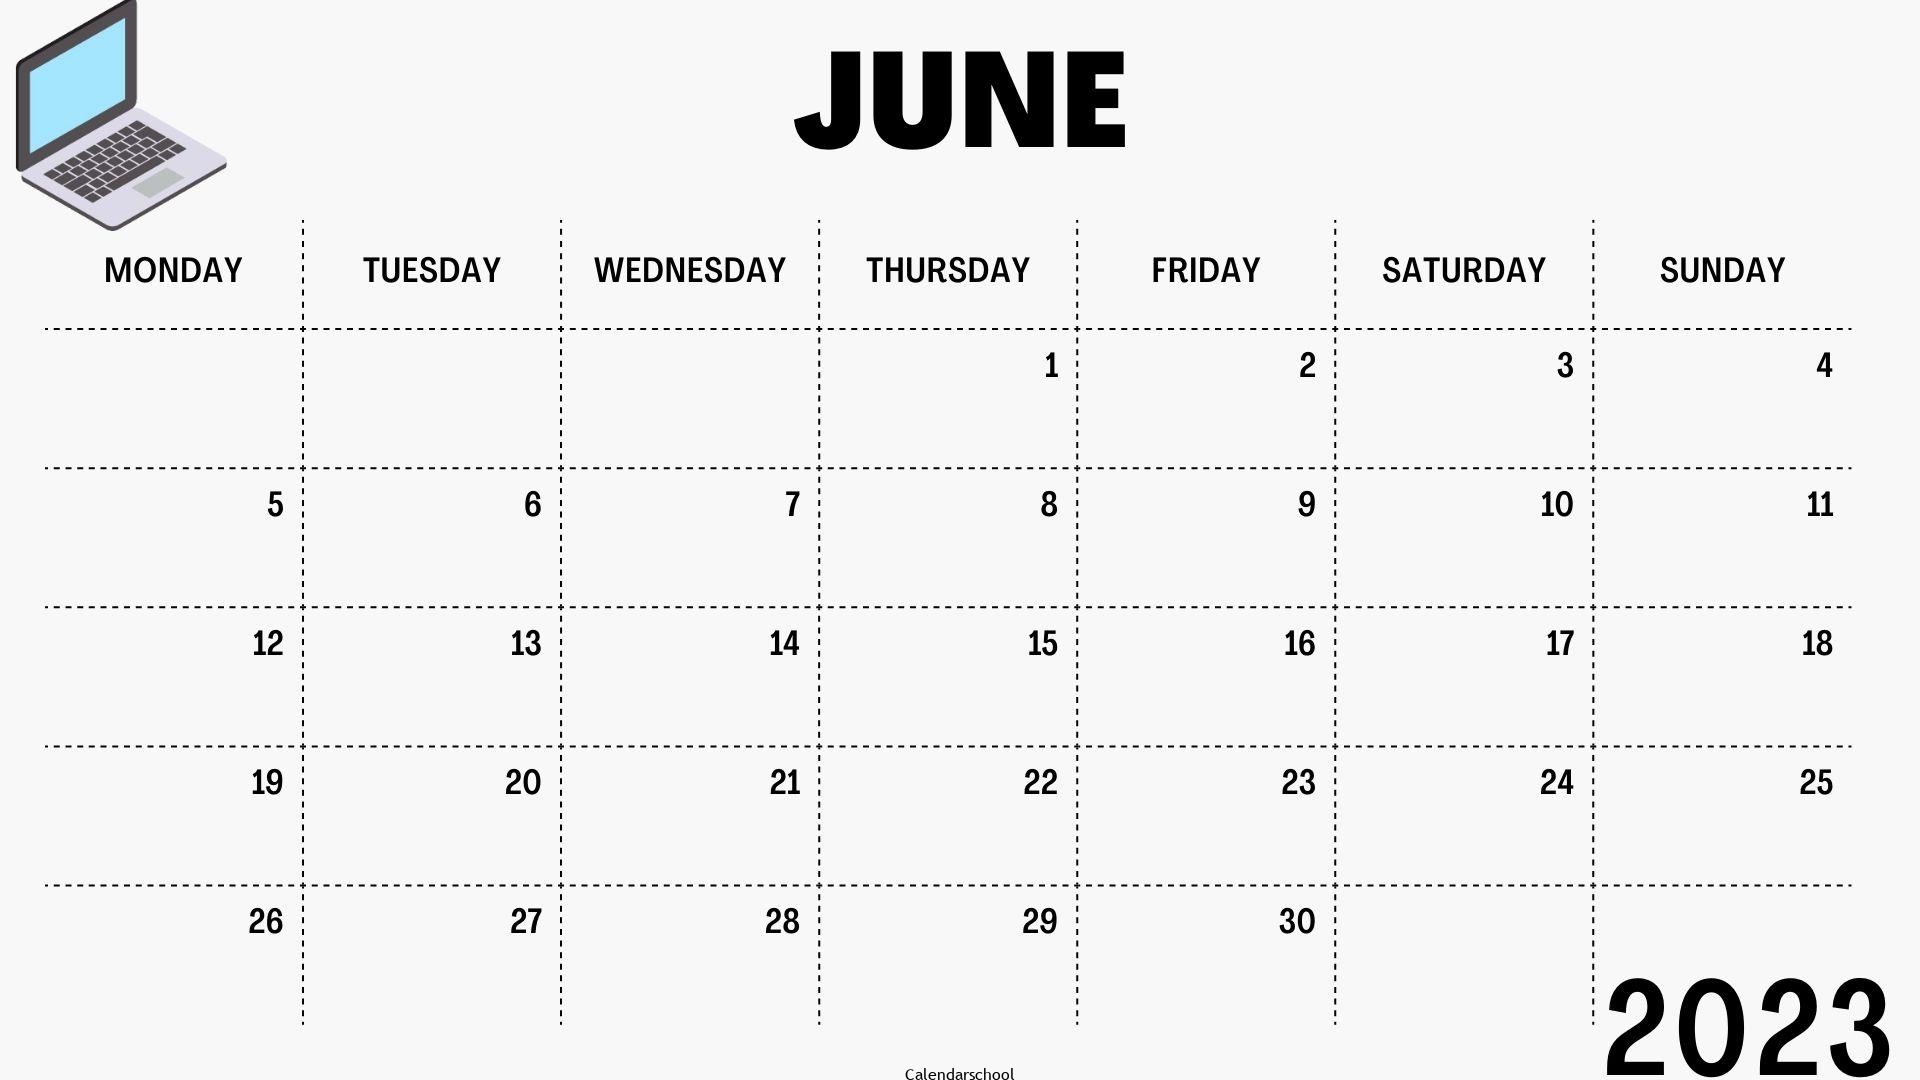 Calendar June 2023 Excel